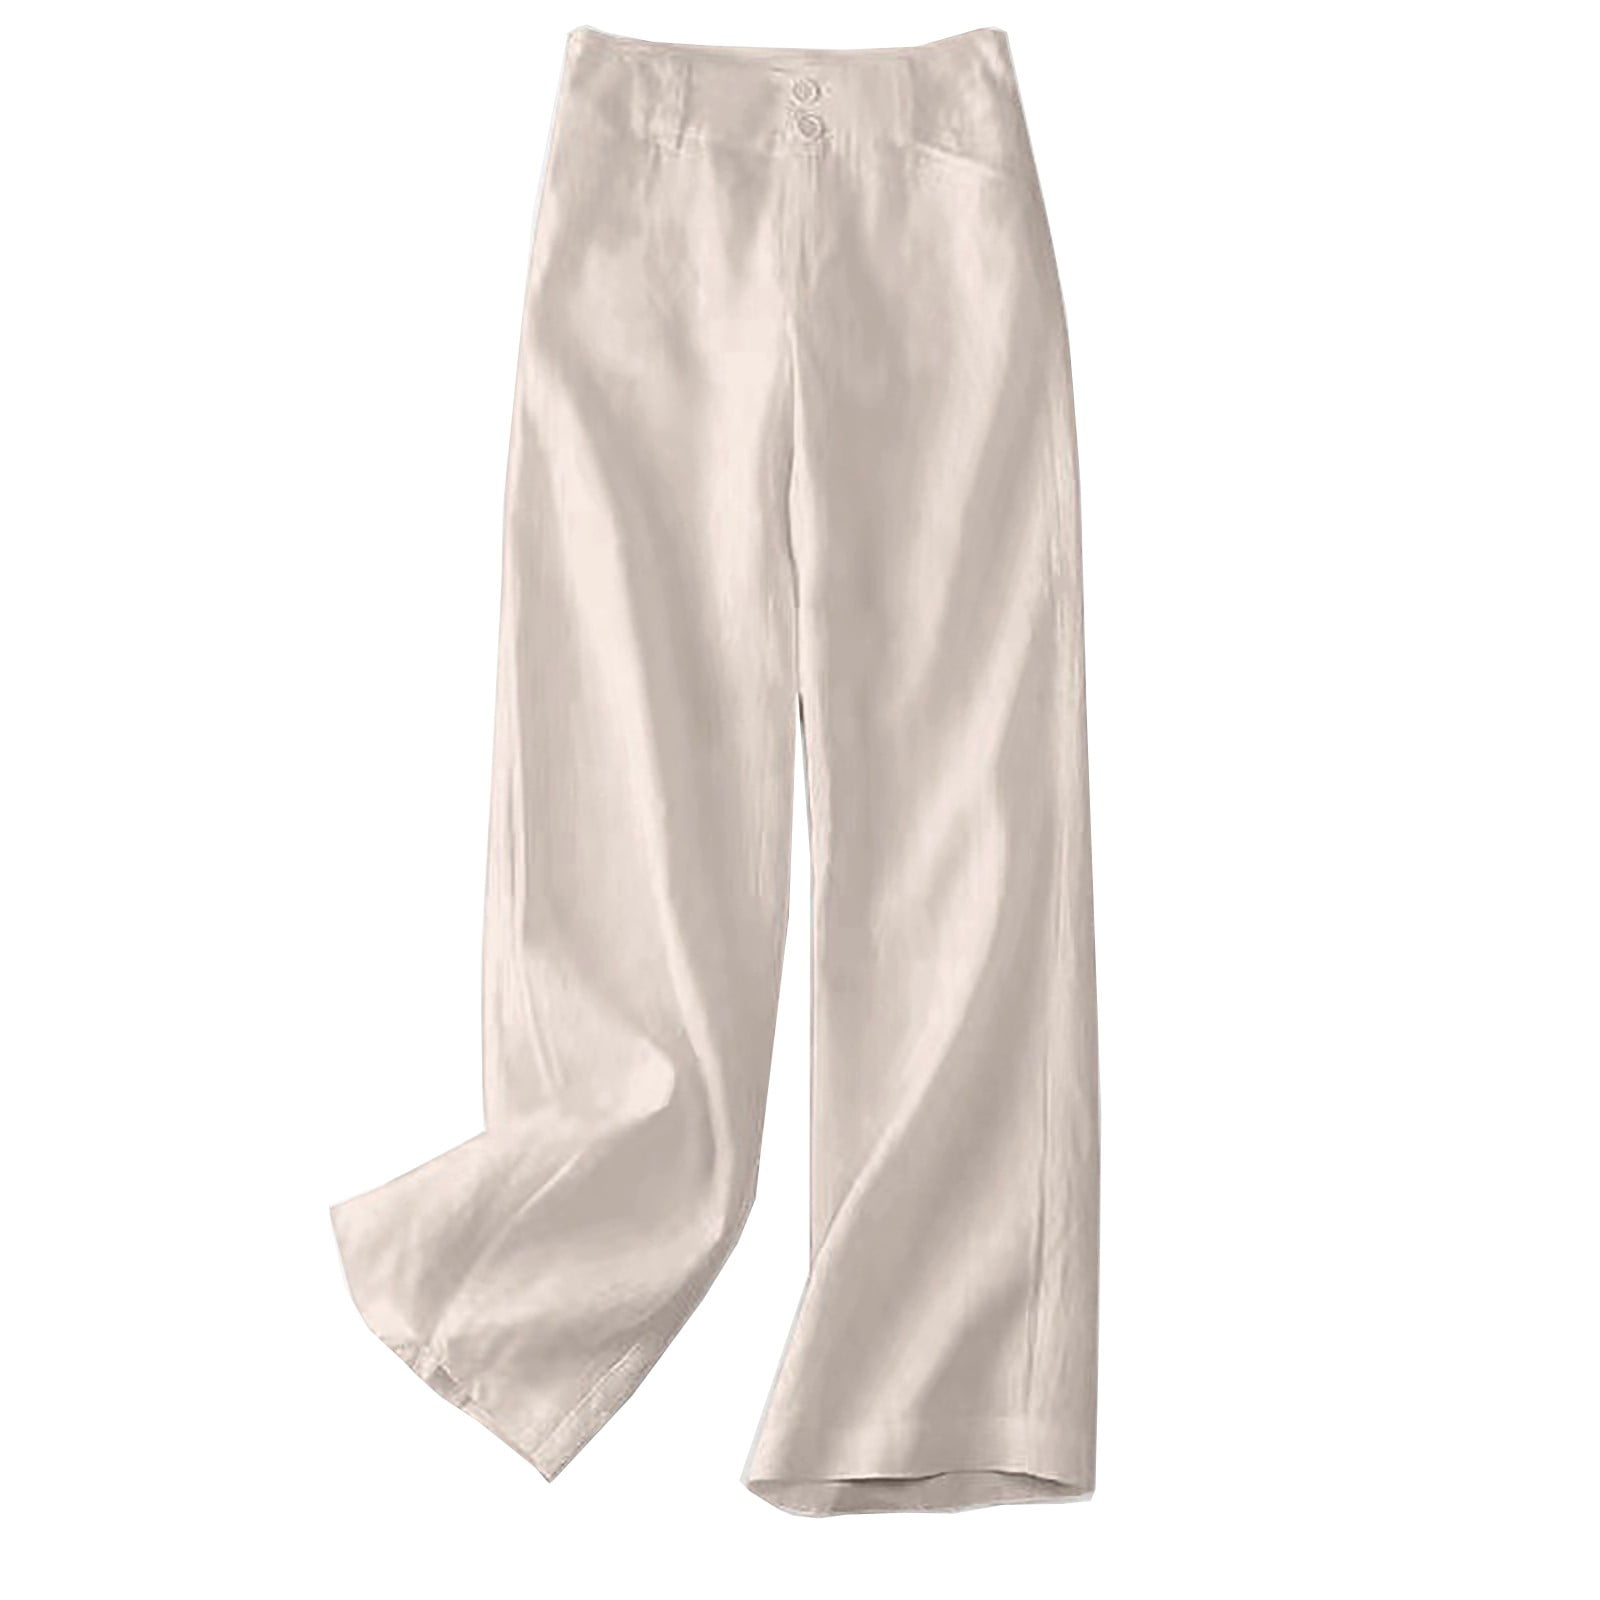 Odeerbi Cotton Linen Wide Leg Pants for Women Lounge Pants Summer Half ...